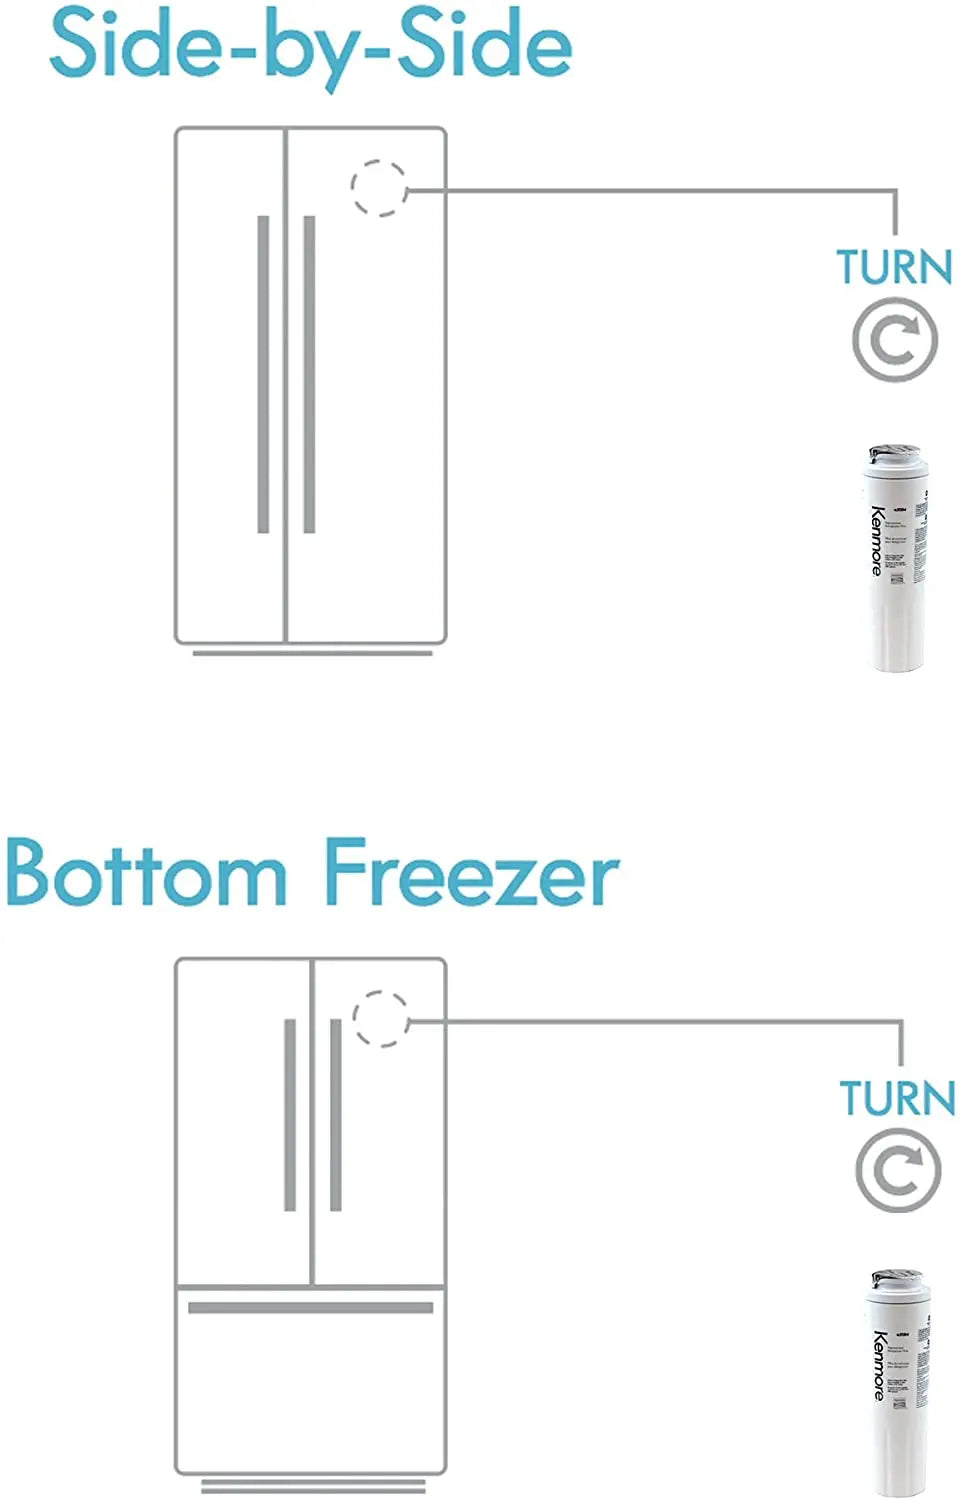 Kenmore 9084 9084 Refrigerator Water Filter, white Kenmore